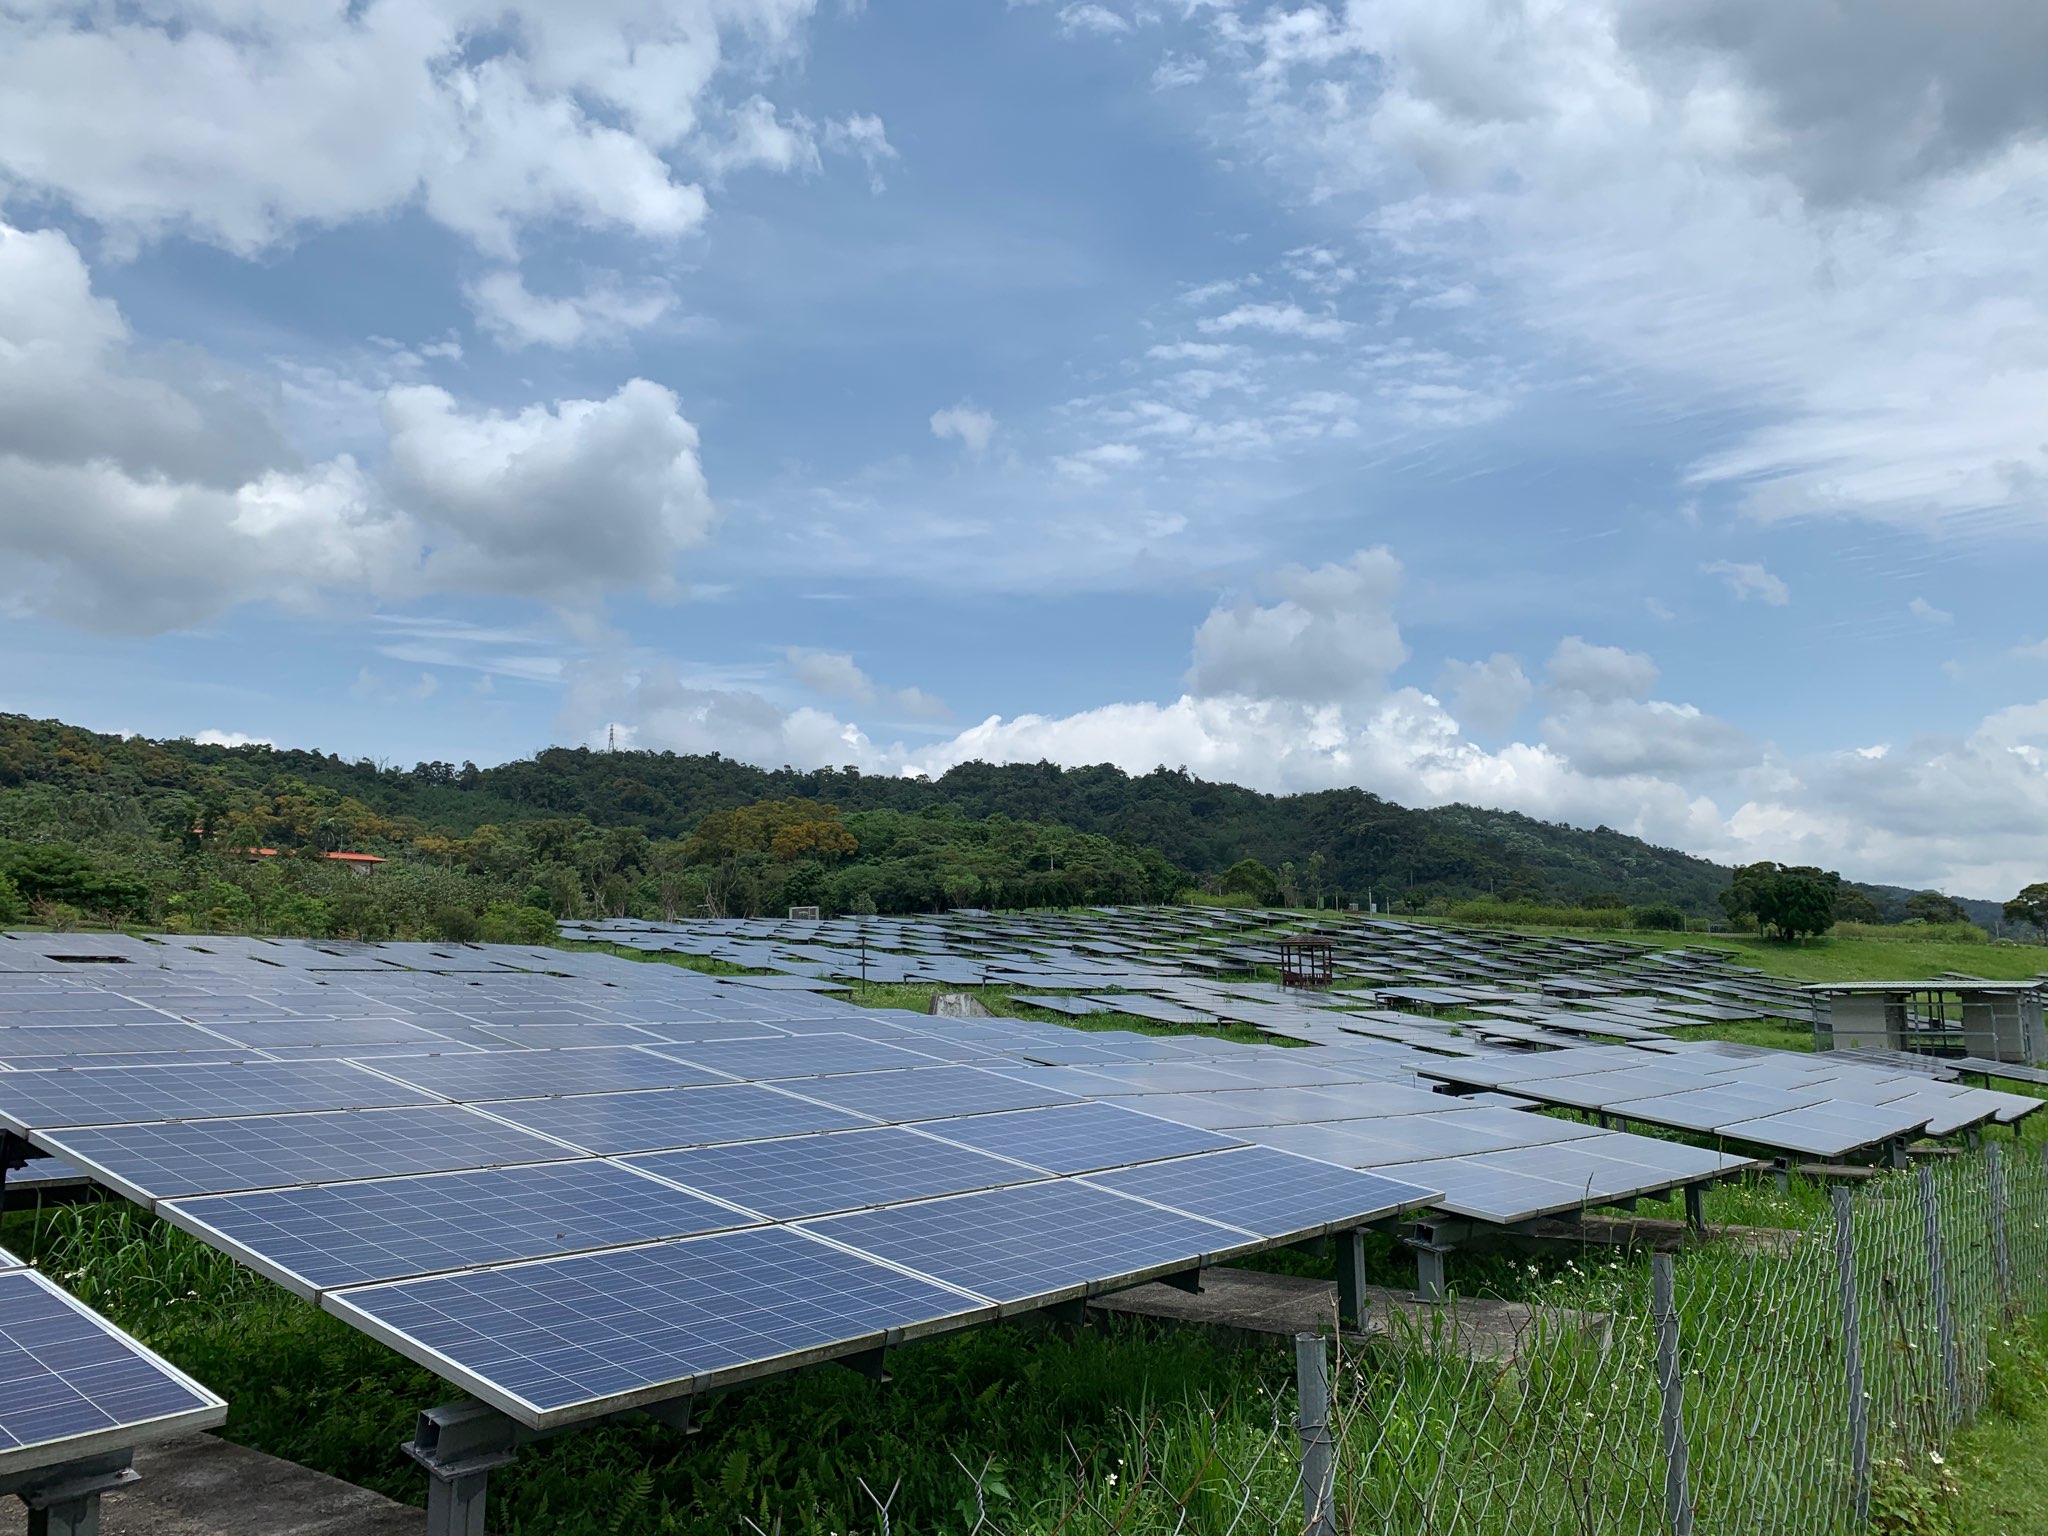 圖為臺北市福德坑能源之丘，是全臺第一個完工發電的掩埋場太陽能發電廠，也是臺北市最大的地面型太陽能光電場，每年發電量可達200萬瓦，為市庫增加100萬元歲入。© Sidney Lai / Greenpeace